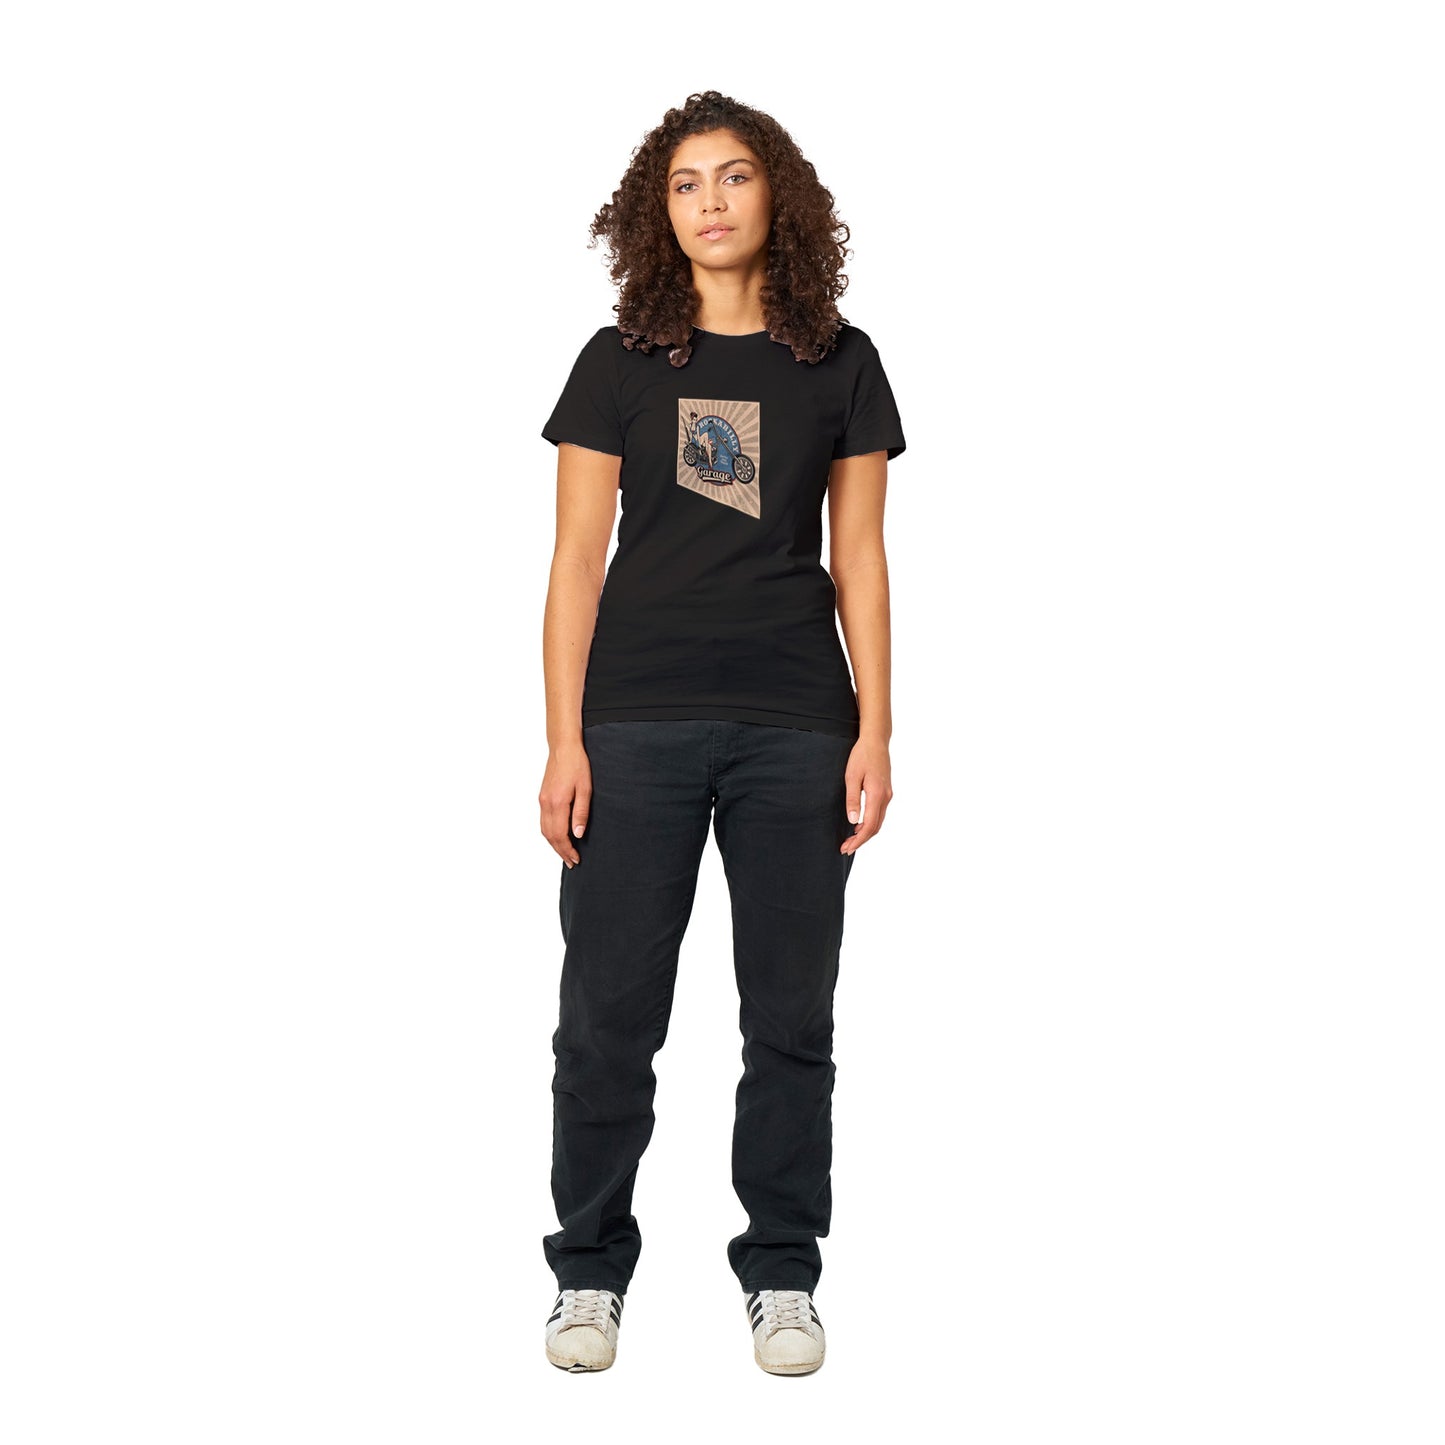 Rockabilly Garage Womens T-shirt